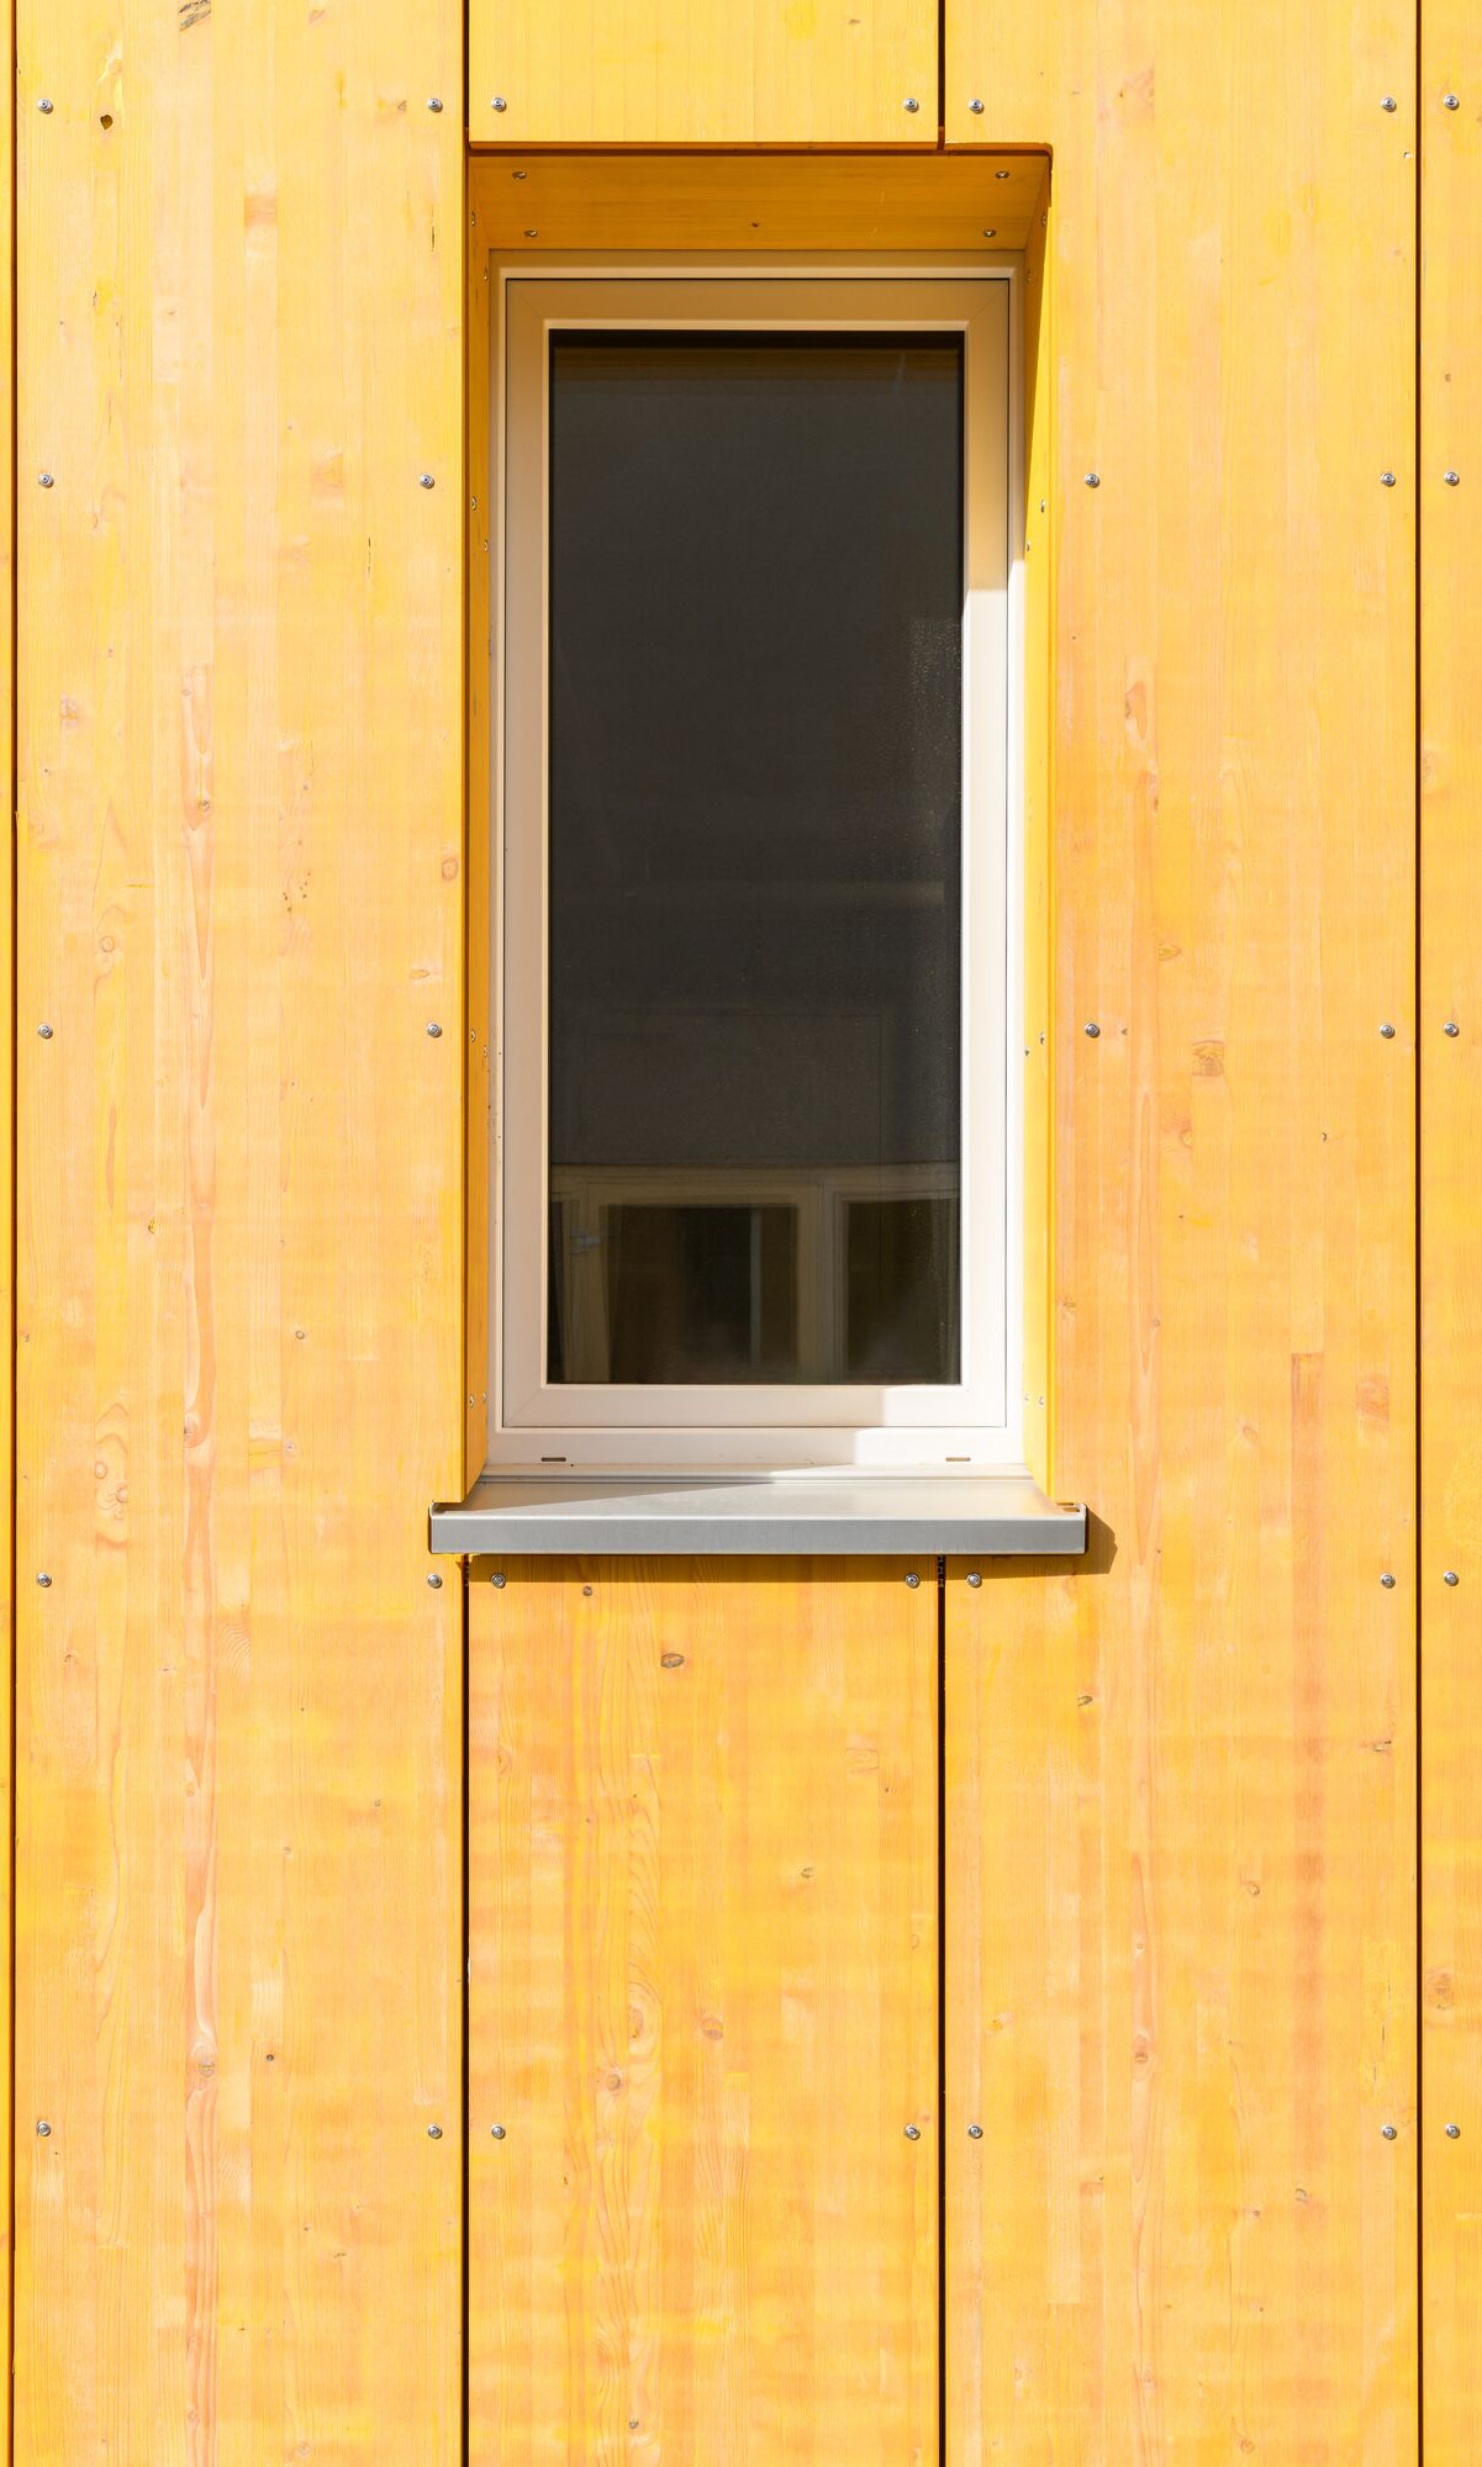 Fenêtres et façade en panneaux jaunes<br/><br/>